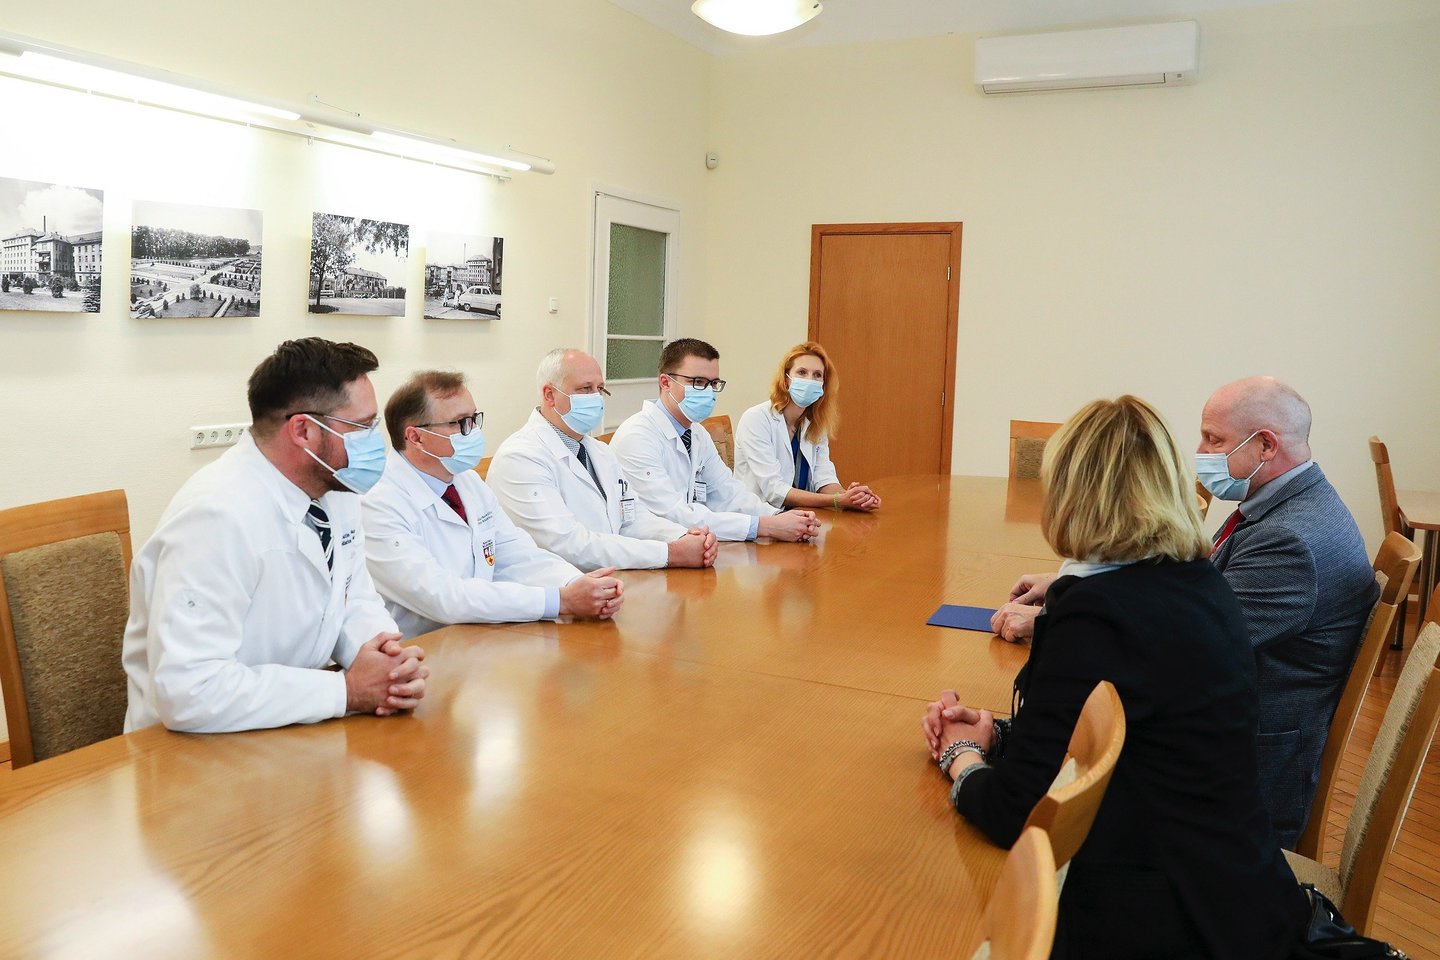  Čekijos Respublikos ambasadorius Lietuvoje J. E. Vit Korselt įteikė Čekijos Respublikos Senato pirmininko Miloš Vystrčil padėką Kauno klinikoms ir jų medikams už atsidavusį darbą.<br> Kauno klinikų nuotr.